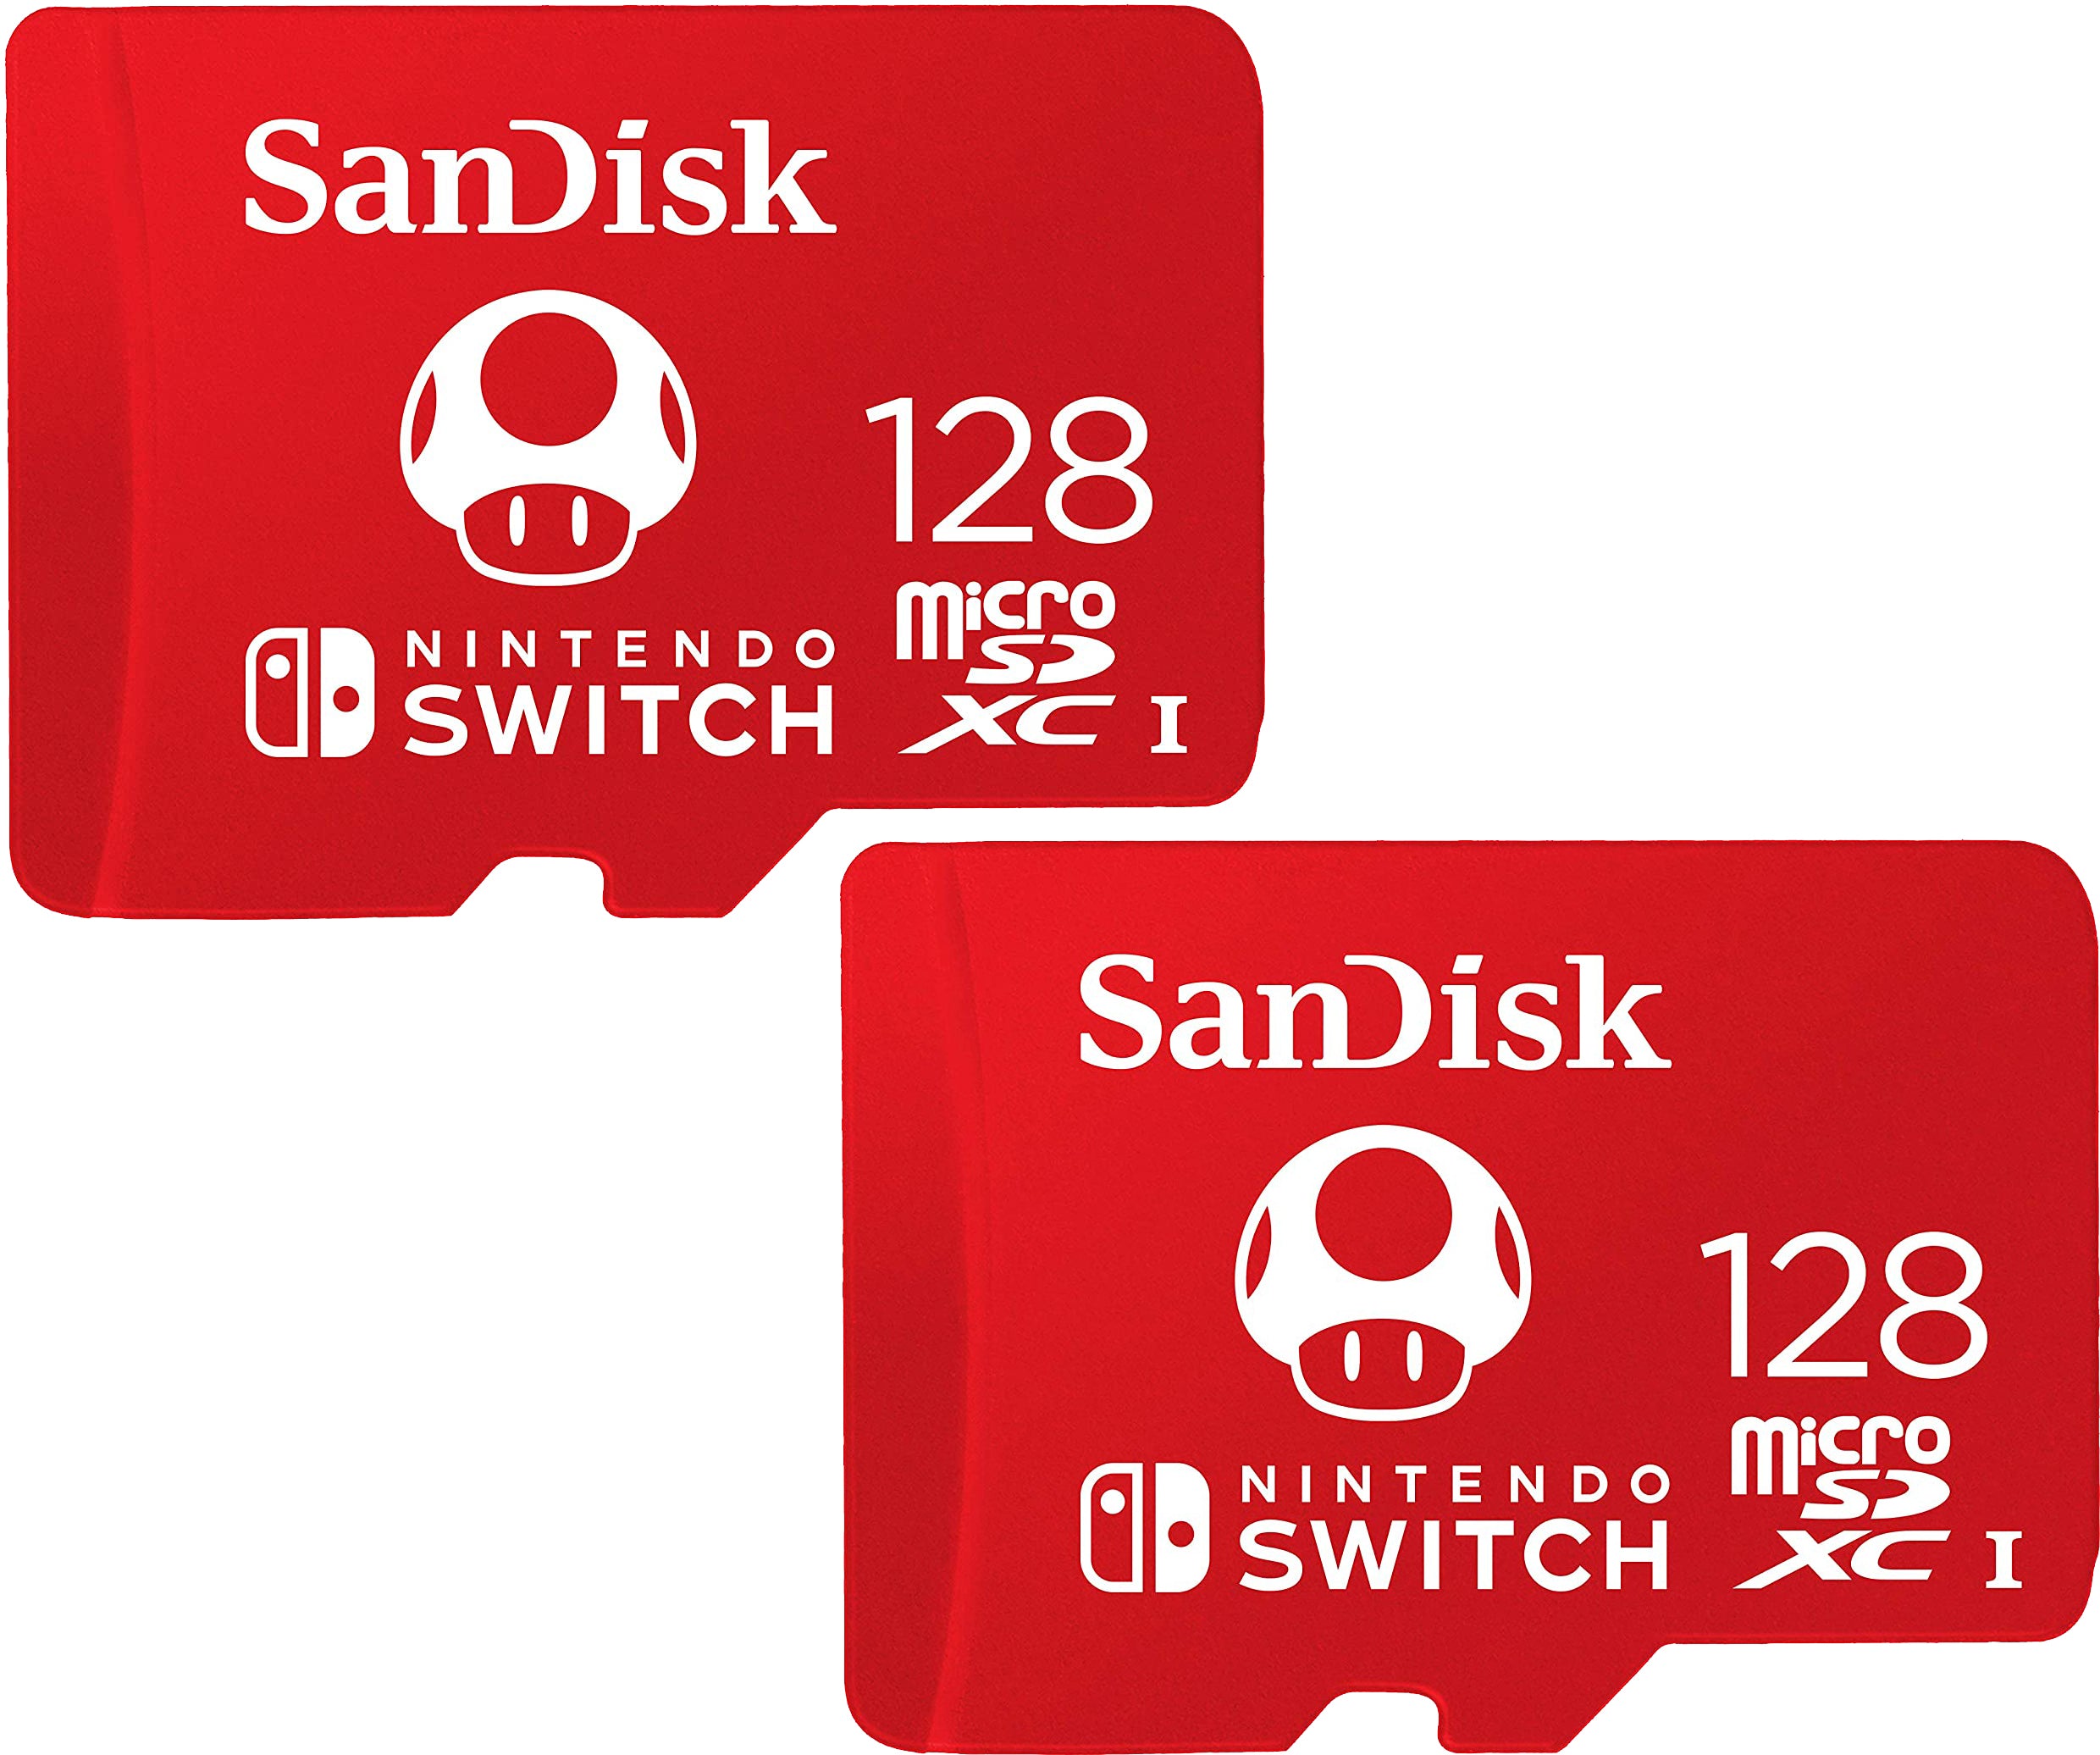 SanDisk 128GB Ultra microSDXC Card